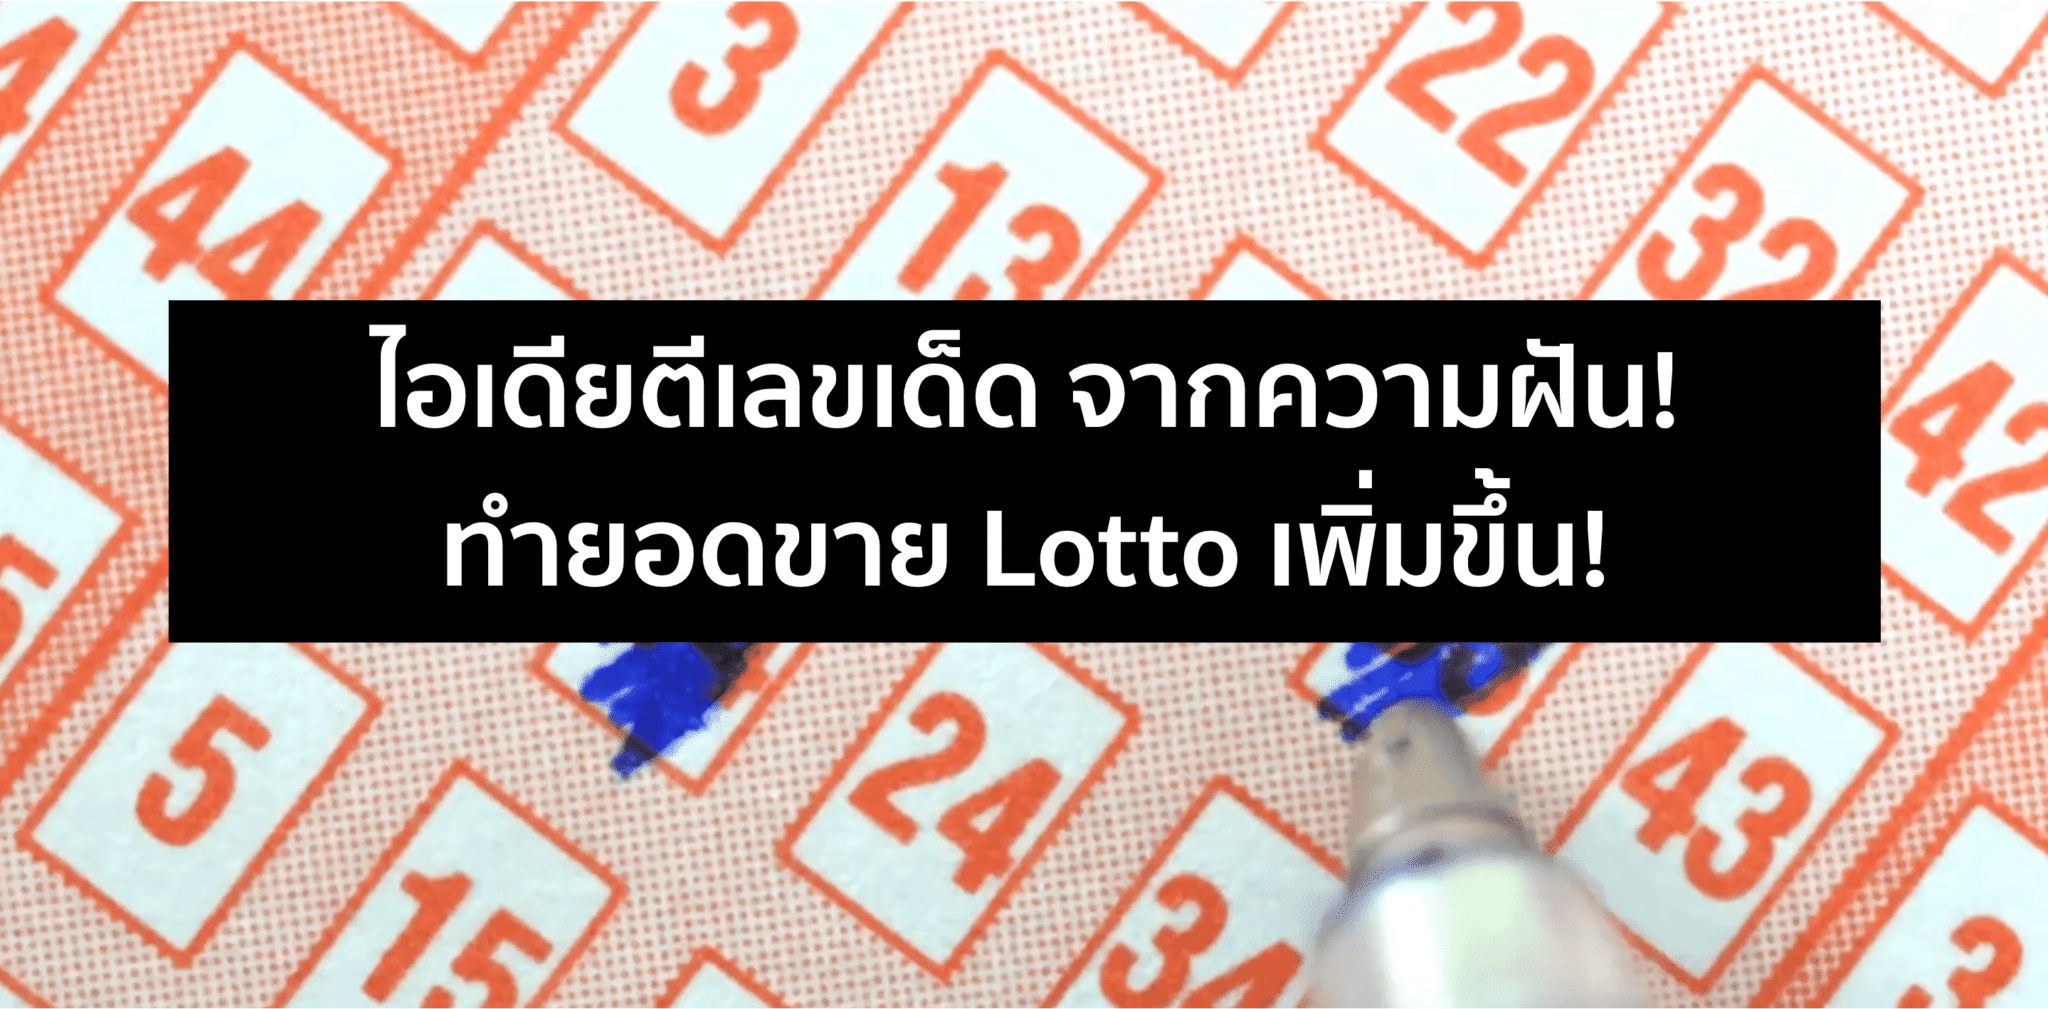 ตีเลขเด็ดจากความฝัน! เพิ่มยอดขาย Lottery ได้ 32%